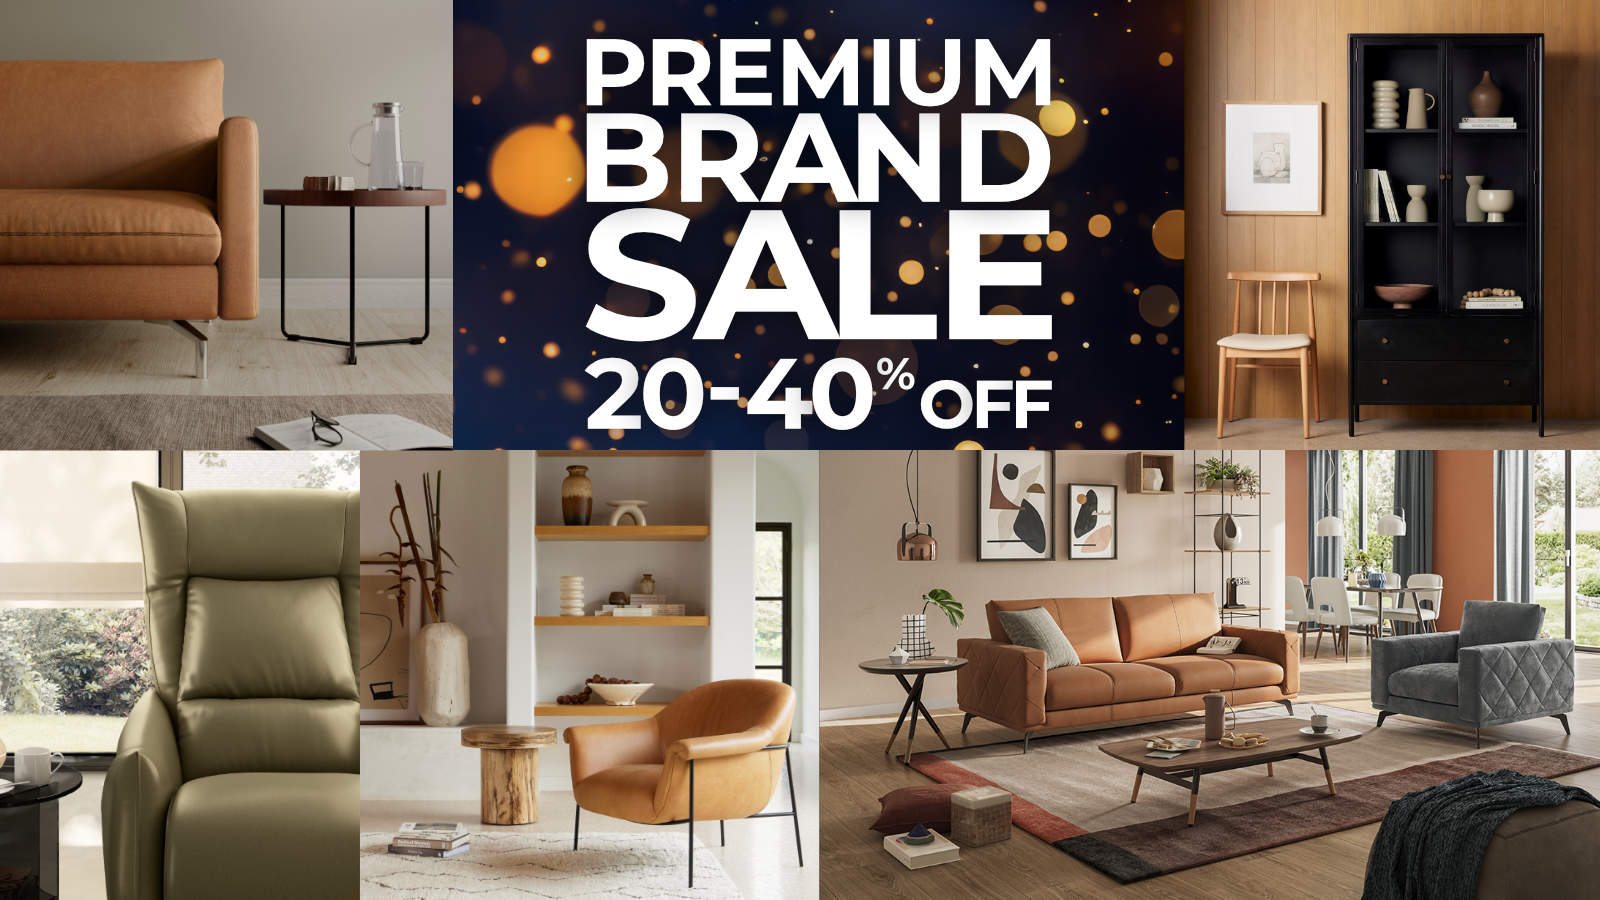 Premium Brand Sale - on now!